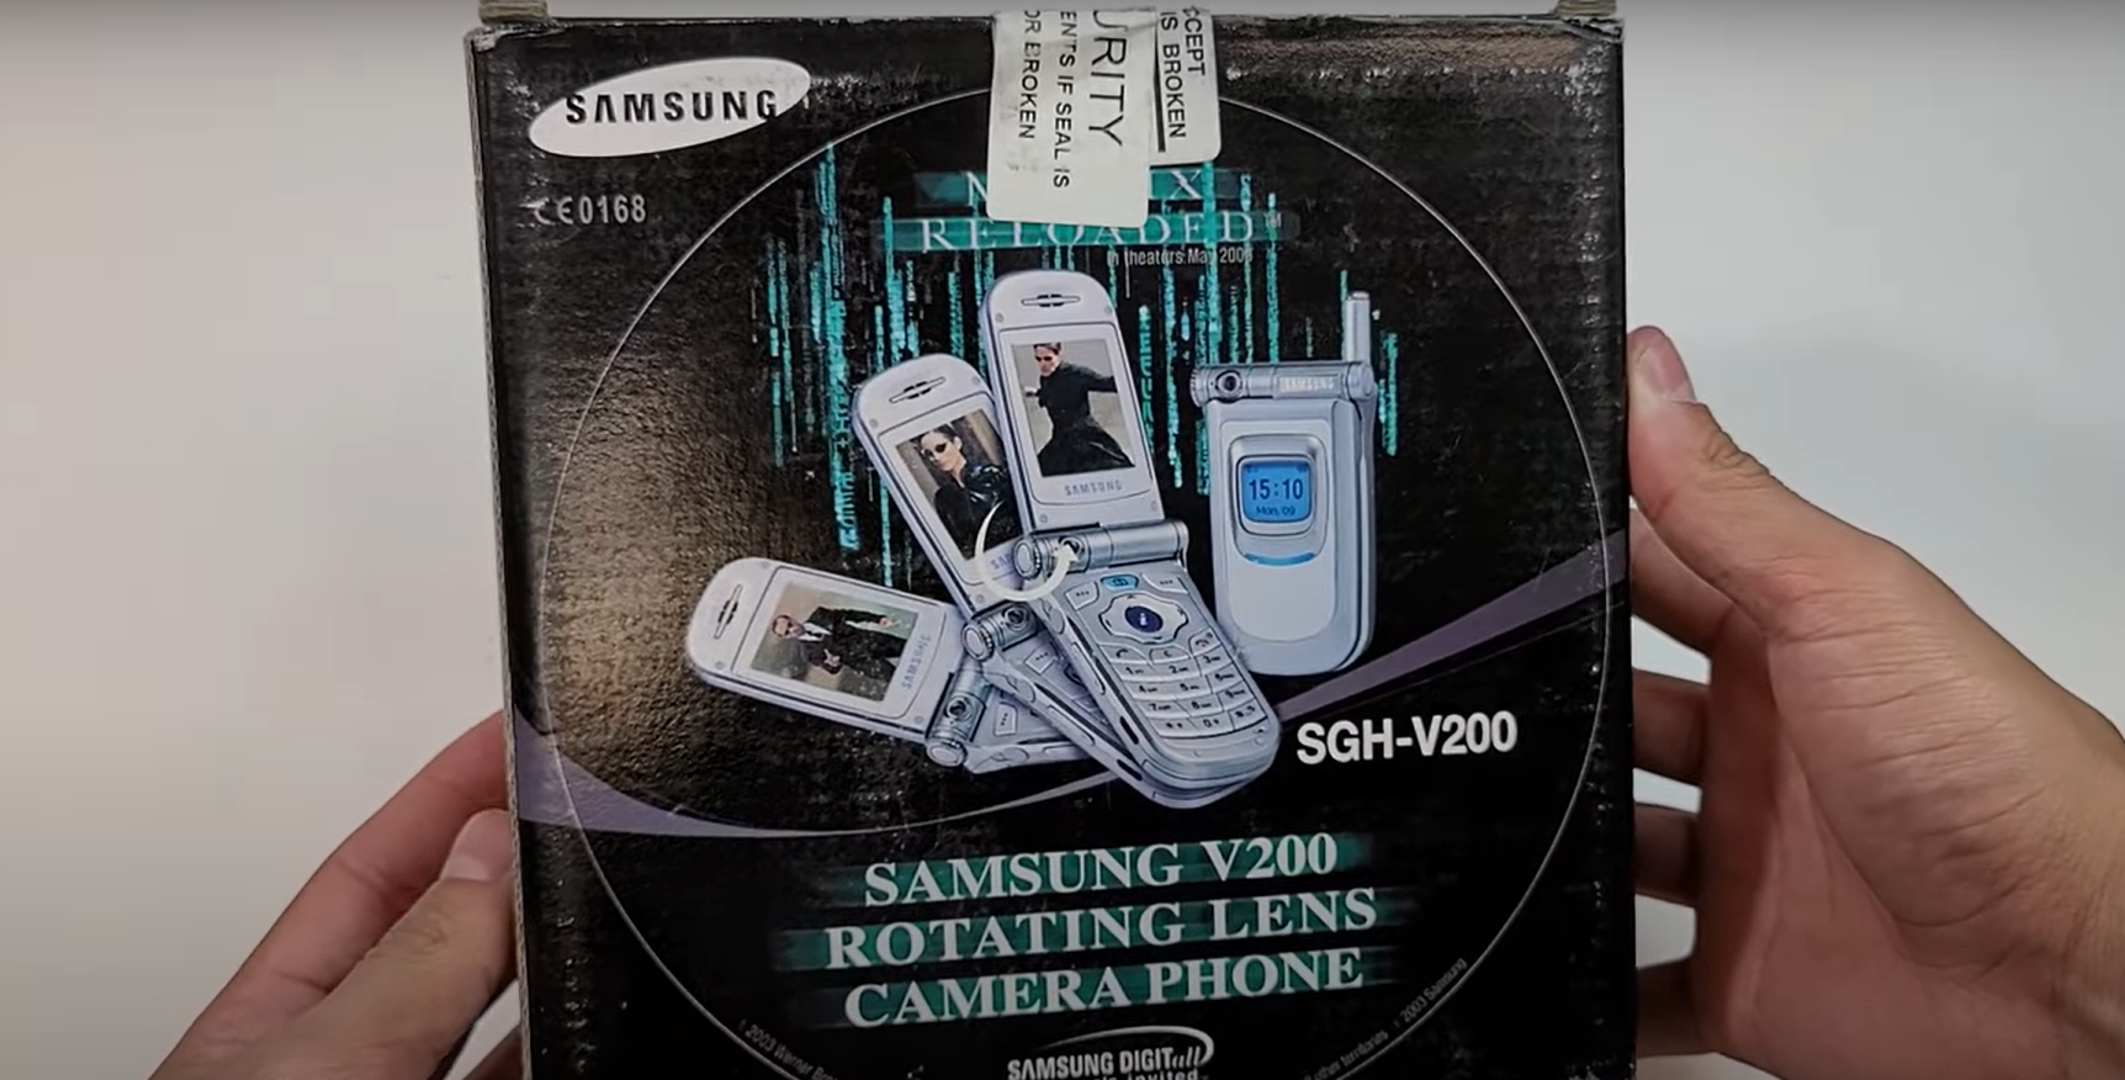 Prvi telefon s kamerom predstavljen je 2000. Samsungov telefon s ugrađenom kamerom, SCH-V200, pušten je u prodaju u Južnoj Koreji u lipnju 2000. Njegova kamera mogla je snimiti 20 fotografija, ali je morala biti spojena na računalo kako bi im korisnici mogli pristupiti, prema Digital Trends. 